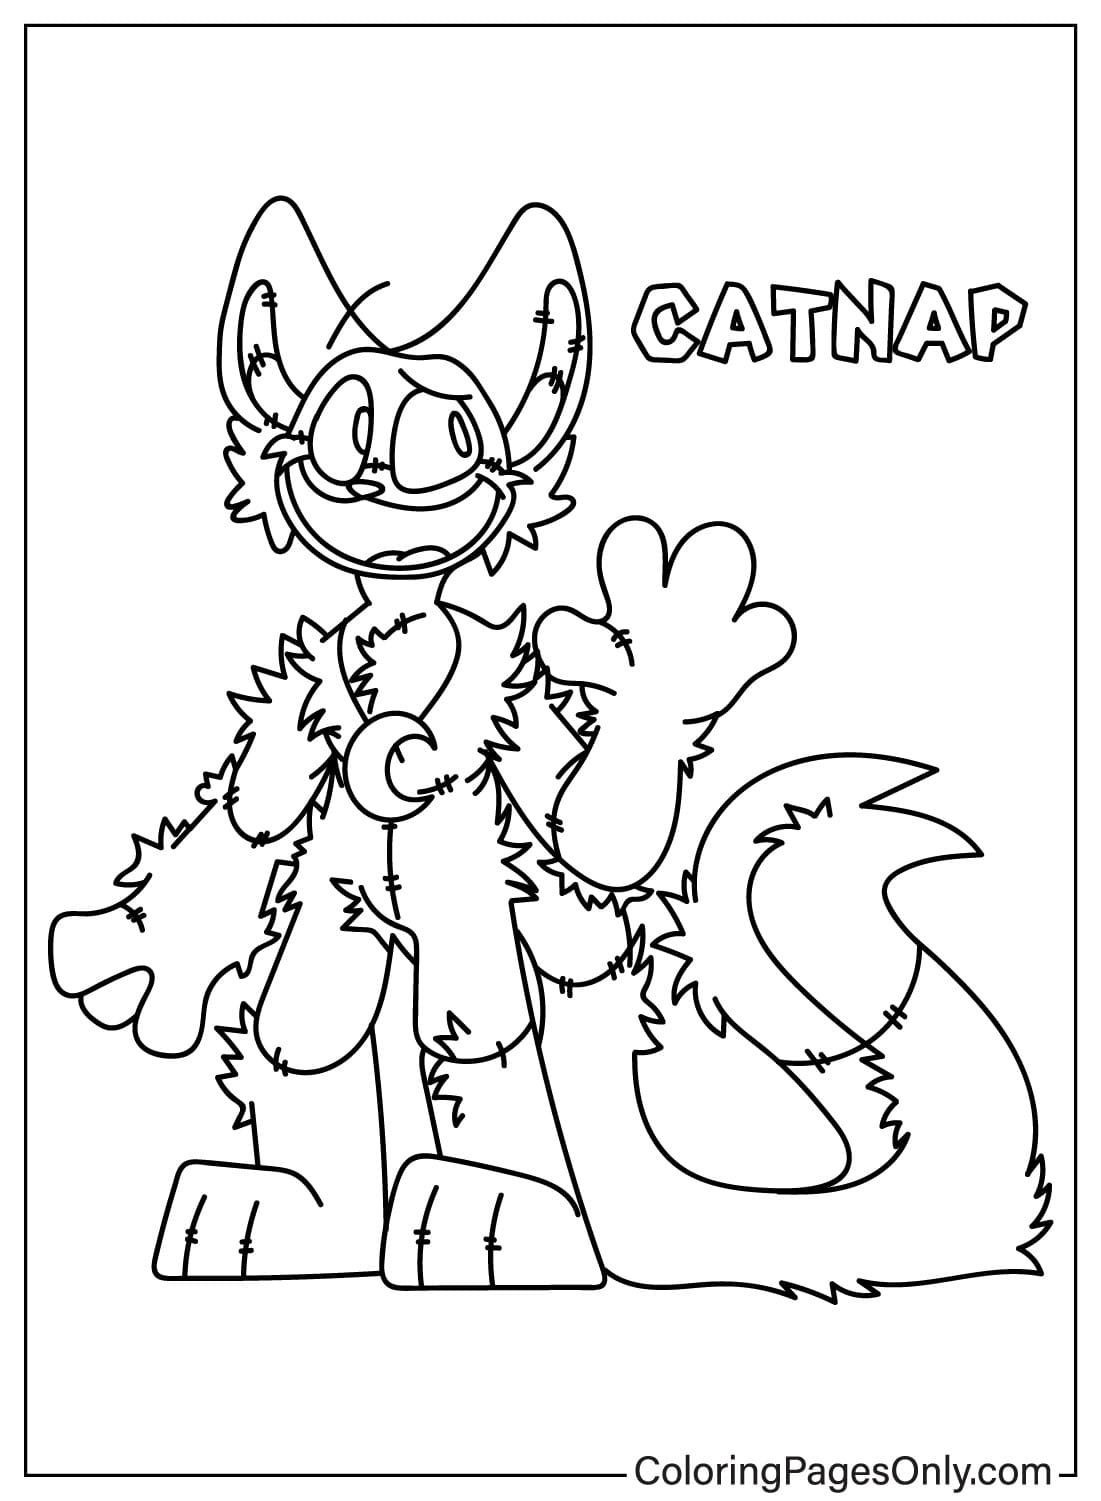 Página para colorear de CatNap de CatNap